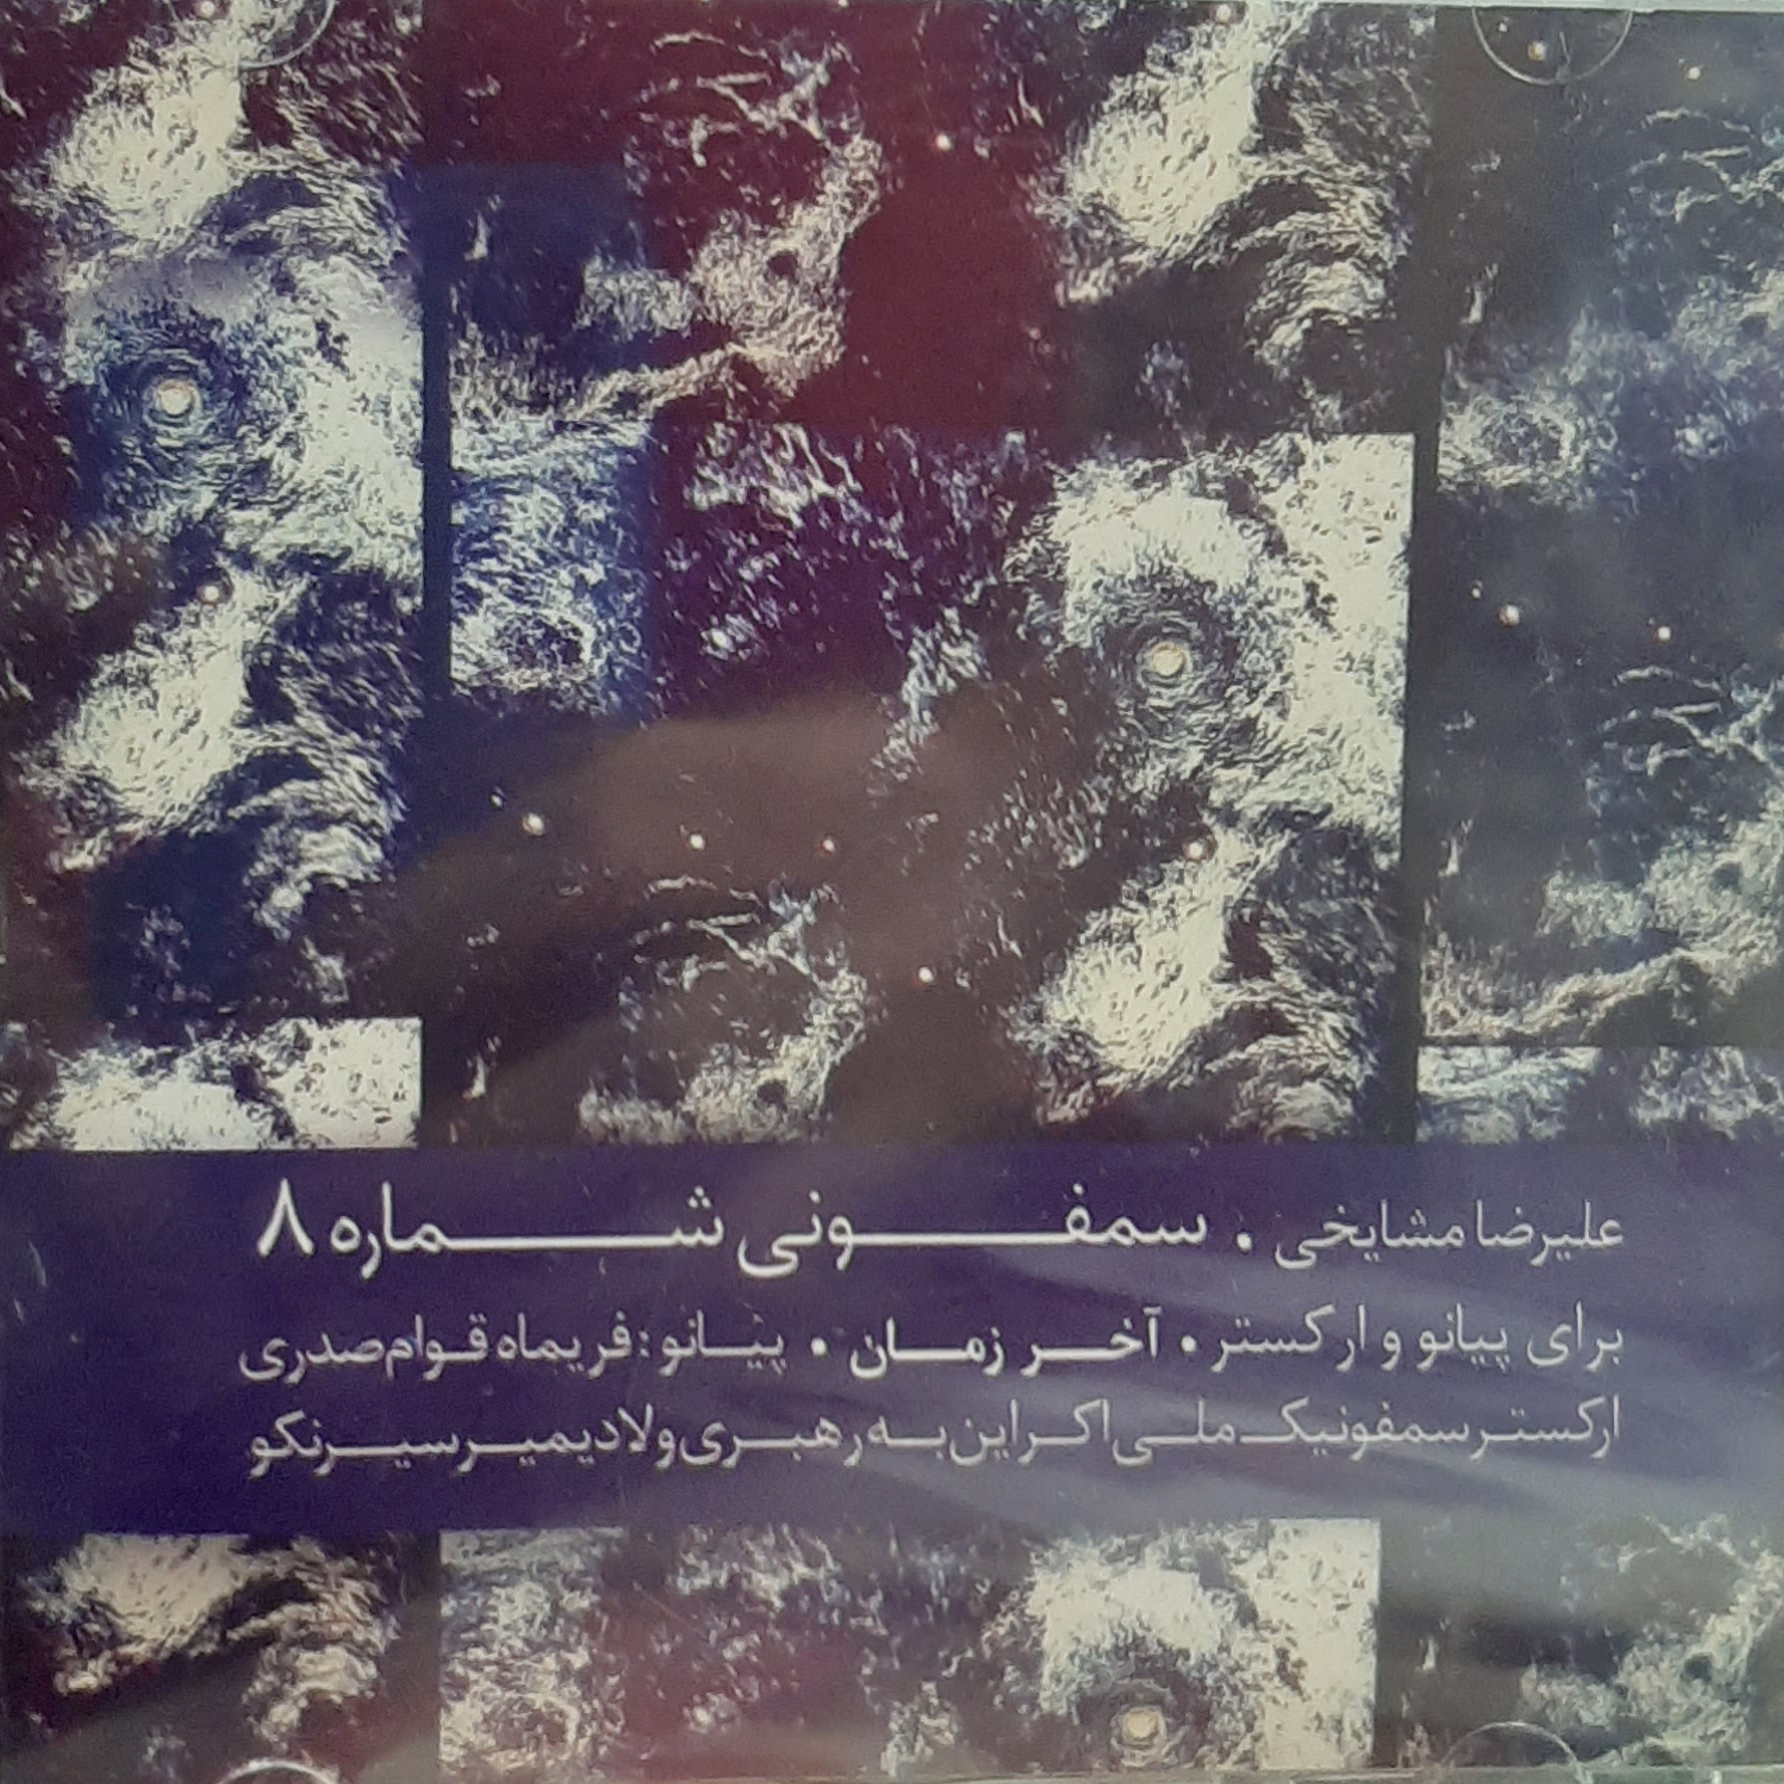 آلبوم موسیقی سمفونی شماره 8 (آخر زمان) اثر علیرضا مشایخی